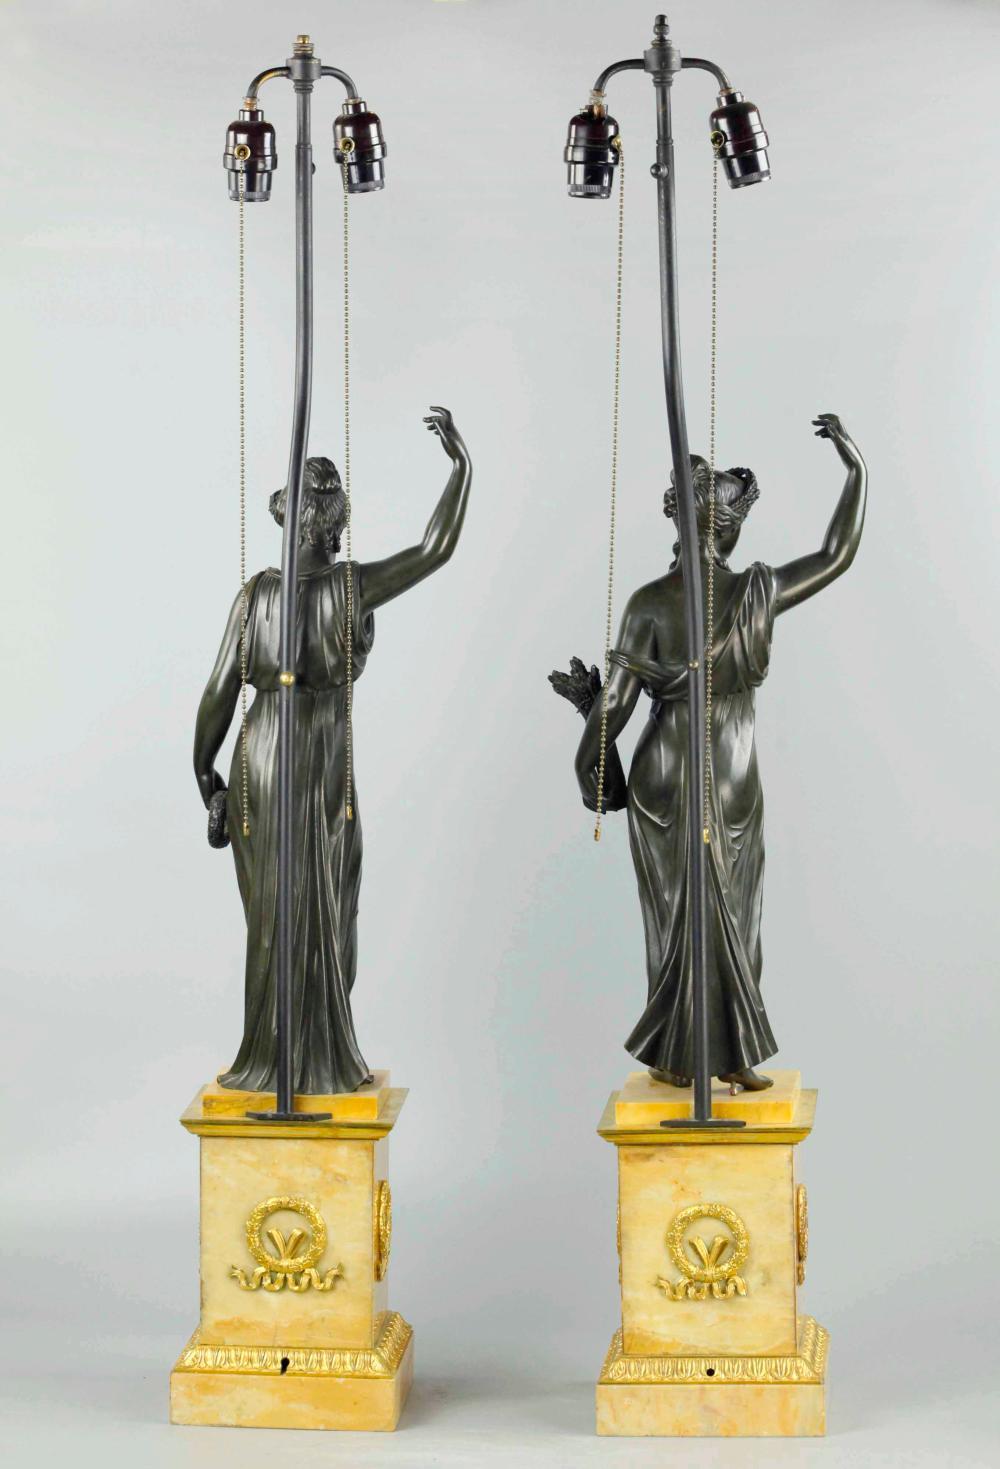 Paar russische patinierte neoklassische Bronzefiguren aus dem 19. Jahrhundert auf Sockeln aus Siena-Marmor. Jetzt als Lampen. Aufwendig gegossene und gut vergoldete Ormolu-Beschläge. Zwei der vier Jahreszeiten. Große Skala

Maße: Gesamthöhe der